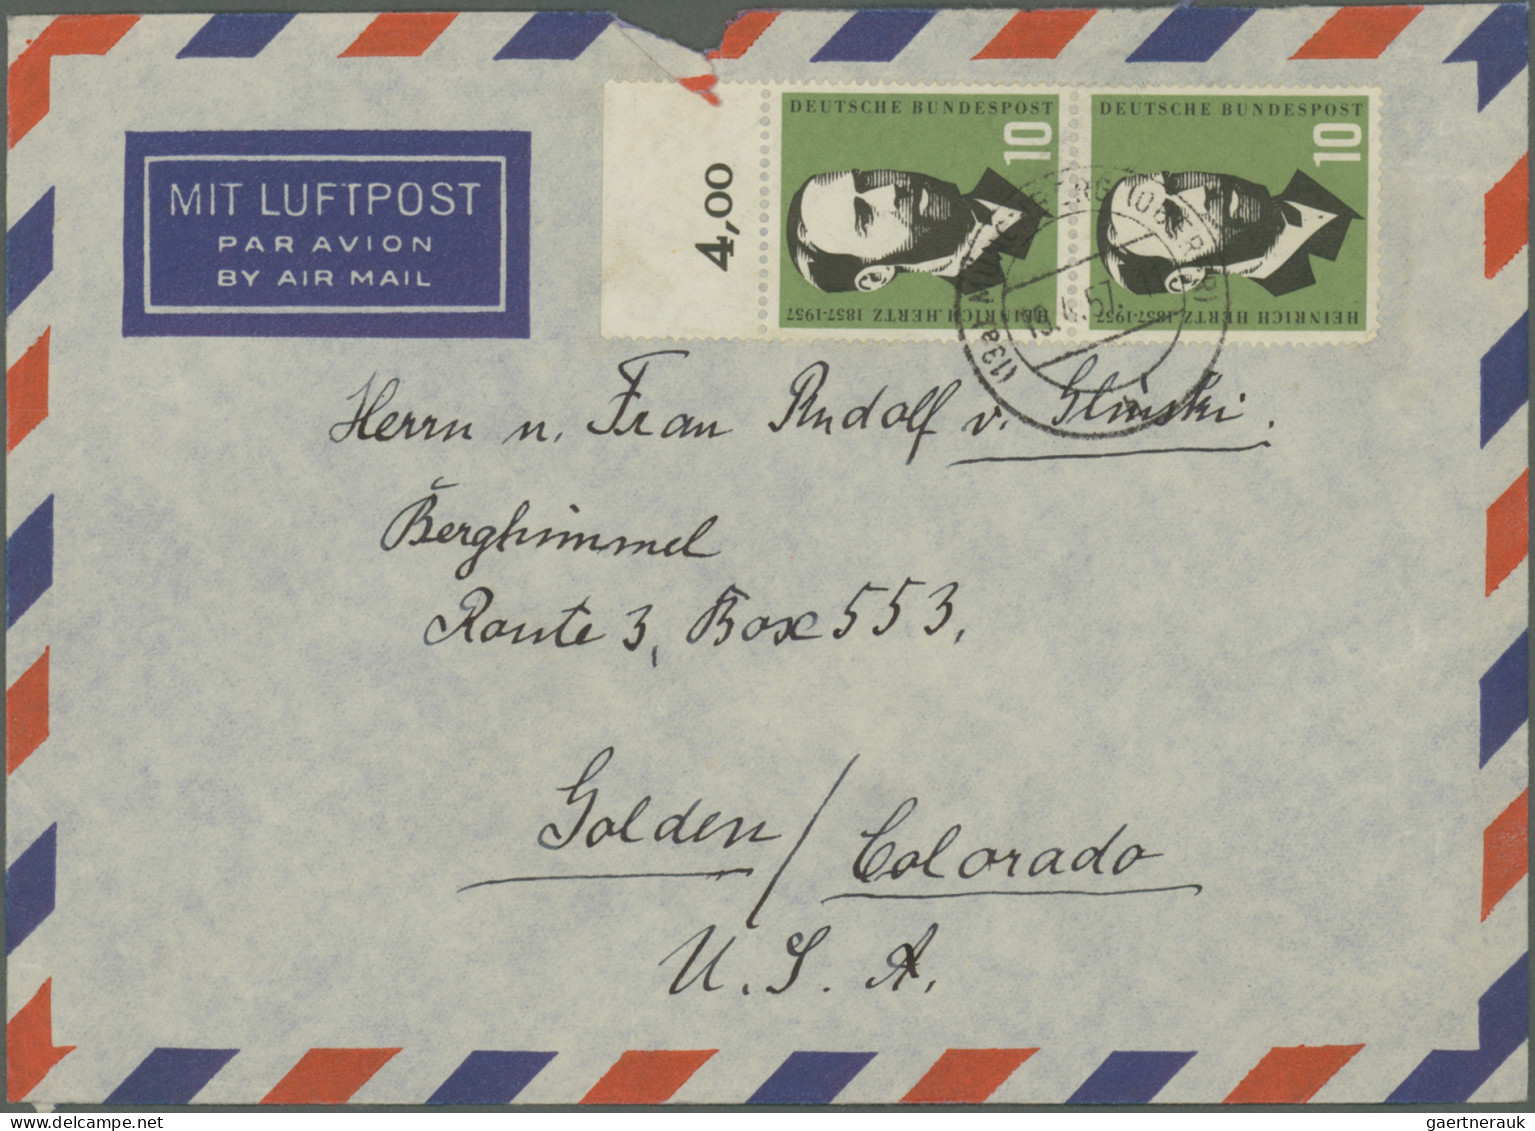 Bundesrepublik Deutschland: 1952/1961, Partie von 61 Briefen/Karten mit Sonderma